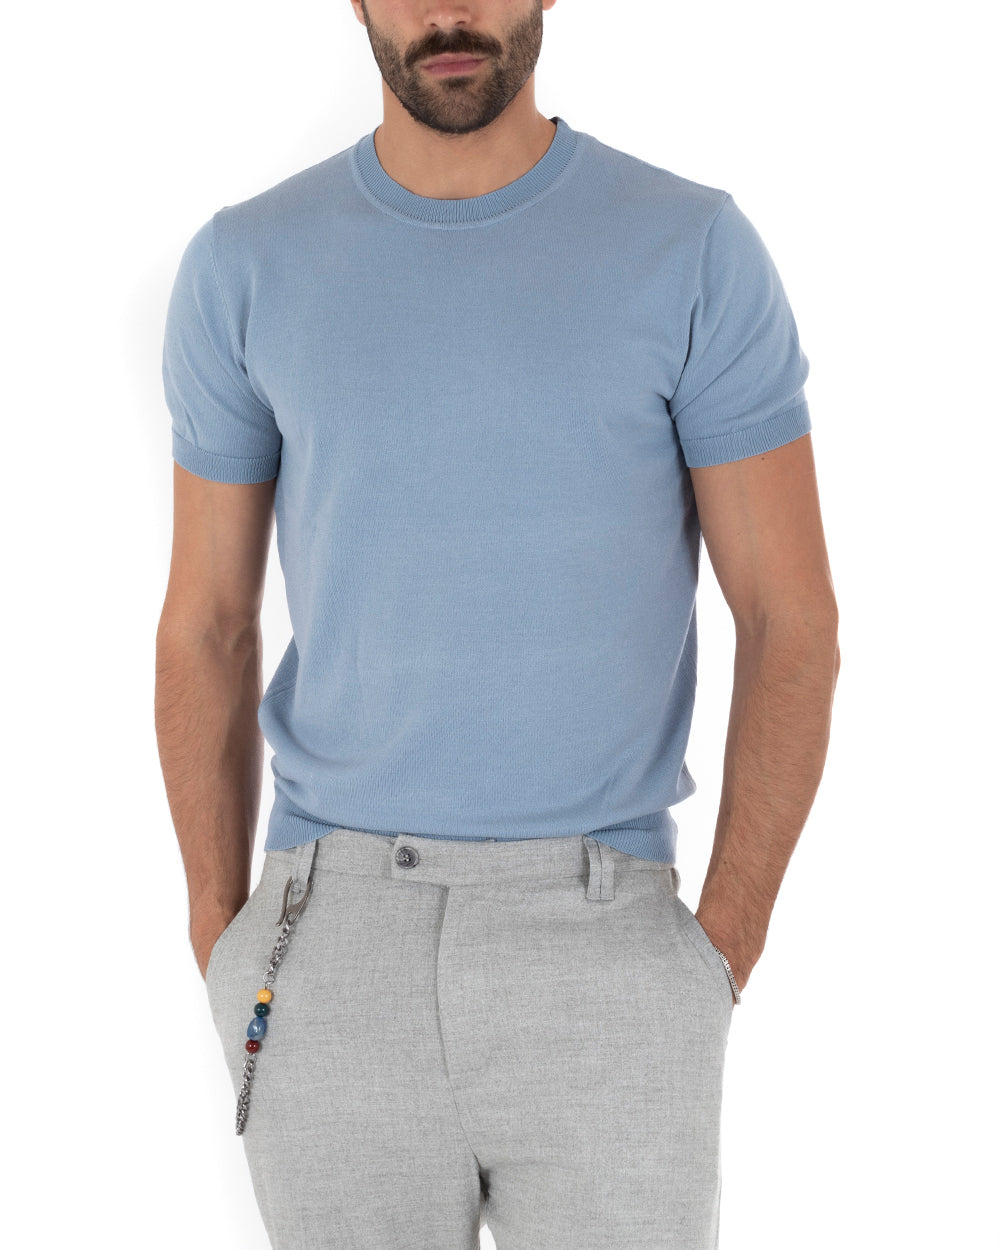 T-Shirt Uomo Maniche Corte Tinta Unita Polvere Girocollo Filo Casual GIOSAL-TS3052A